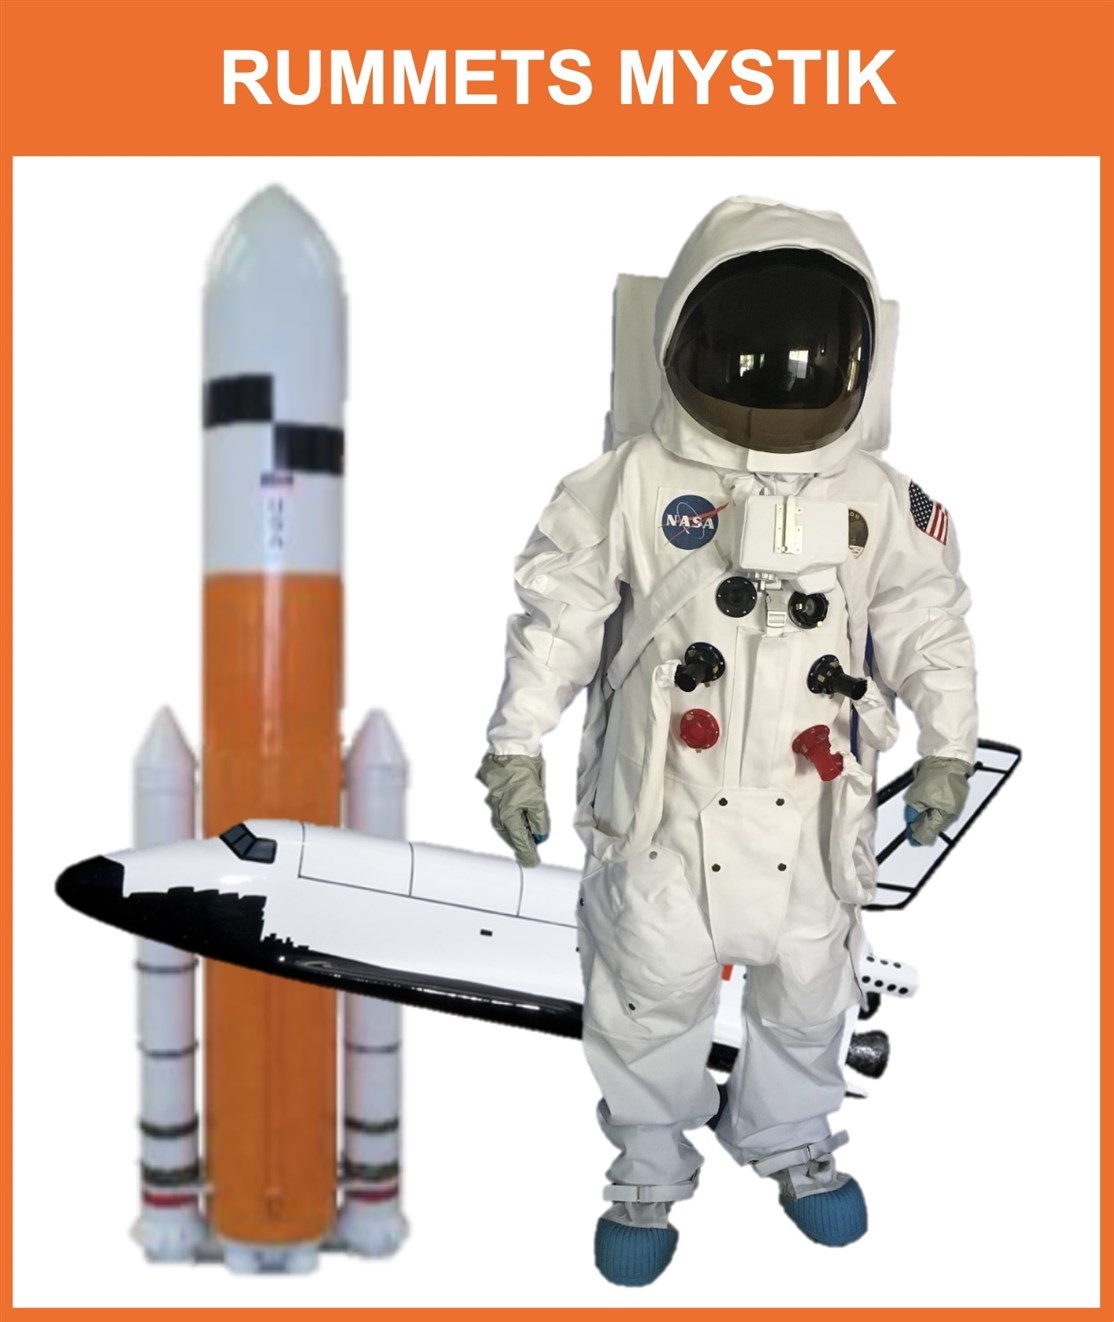 Rum Raketter, Astrunauter & Space
Lærerig udstilling med ting fra rummet
*